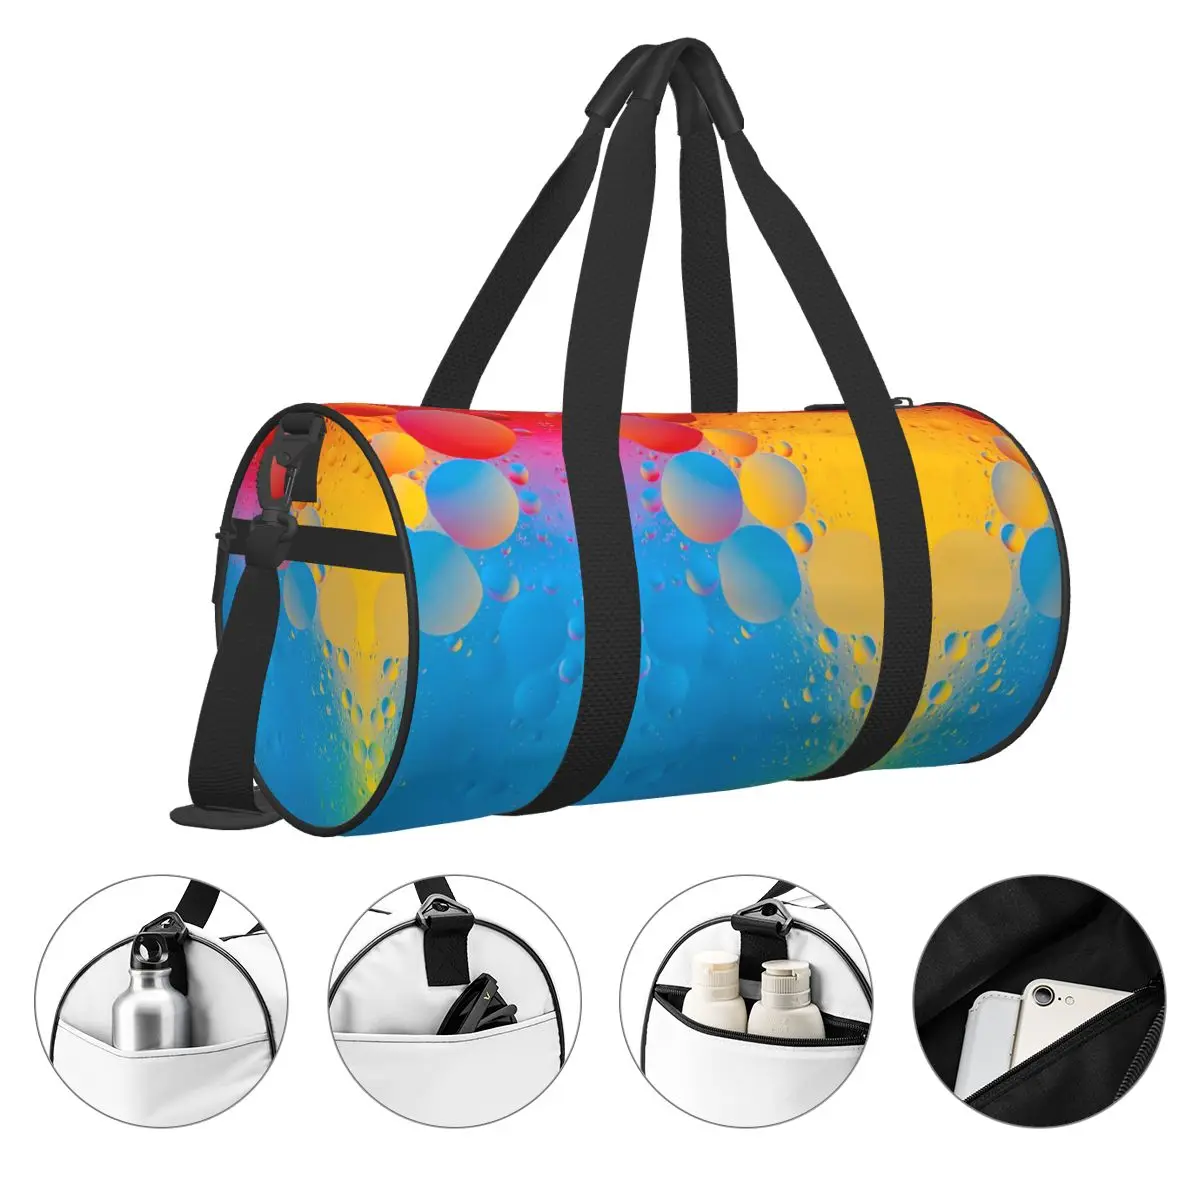 Красочные пузыри 4К Спортивные сумки красочные граффити багаж спортивная сумка с обувью забавные сумки пару дизайн водонепроницаемый фитнес-сумка